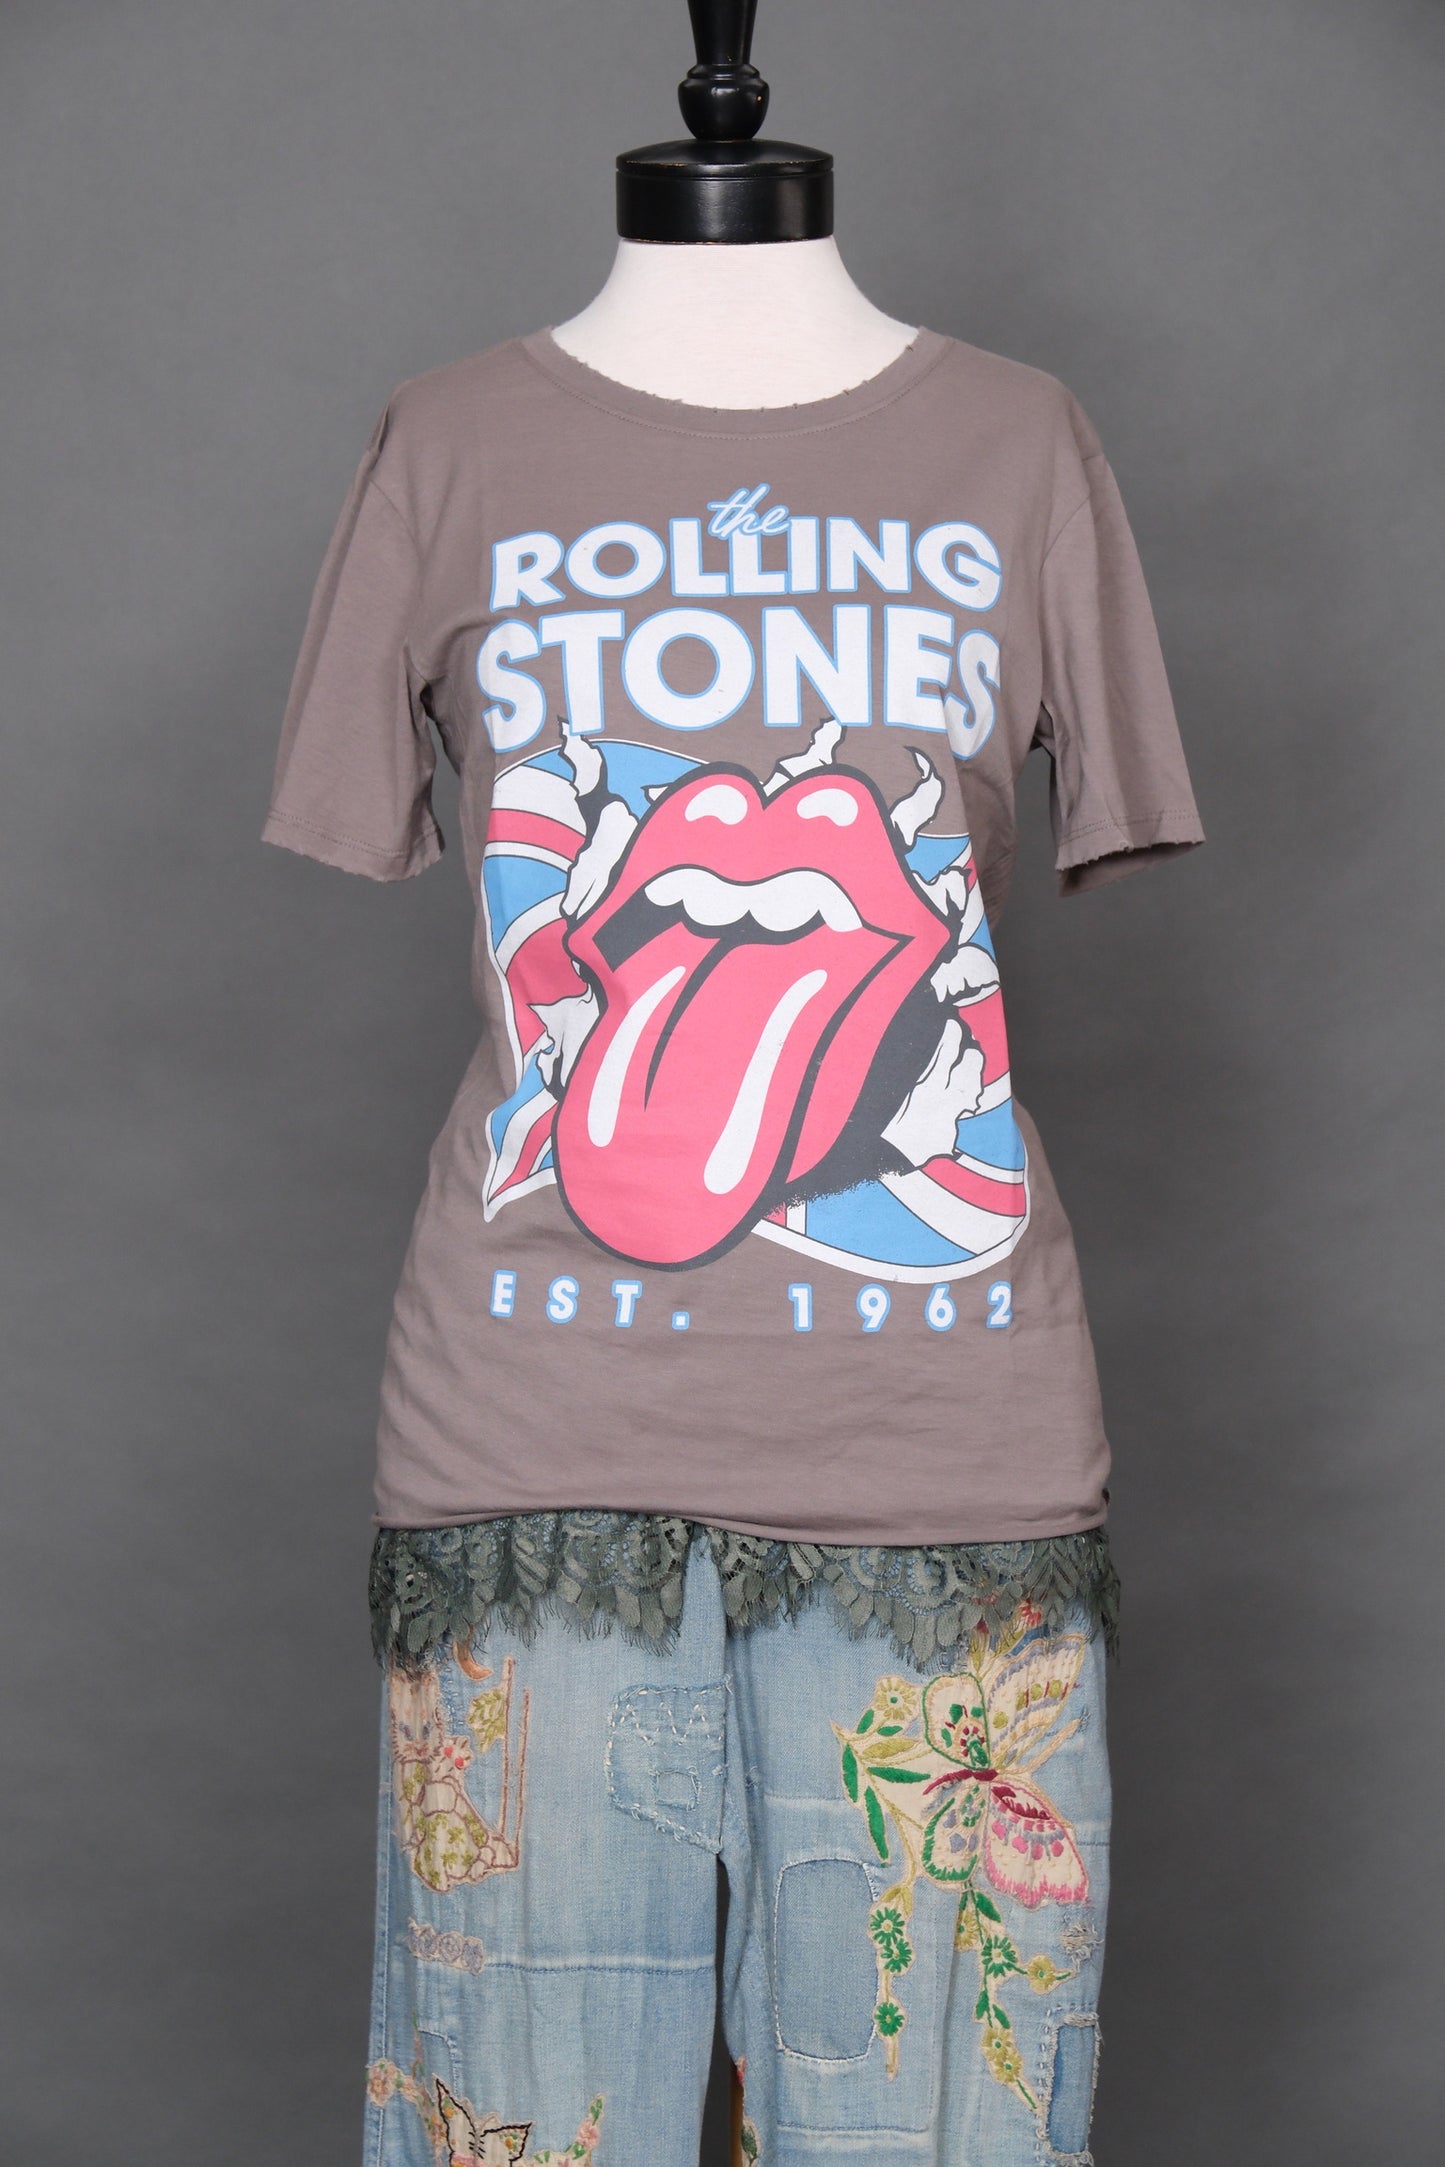 Rolling Stones Est. 1962 Grey Tee Shirt